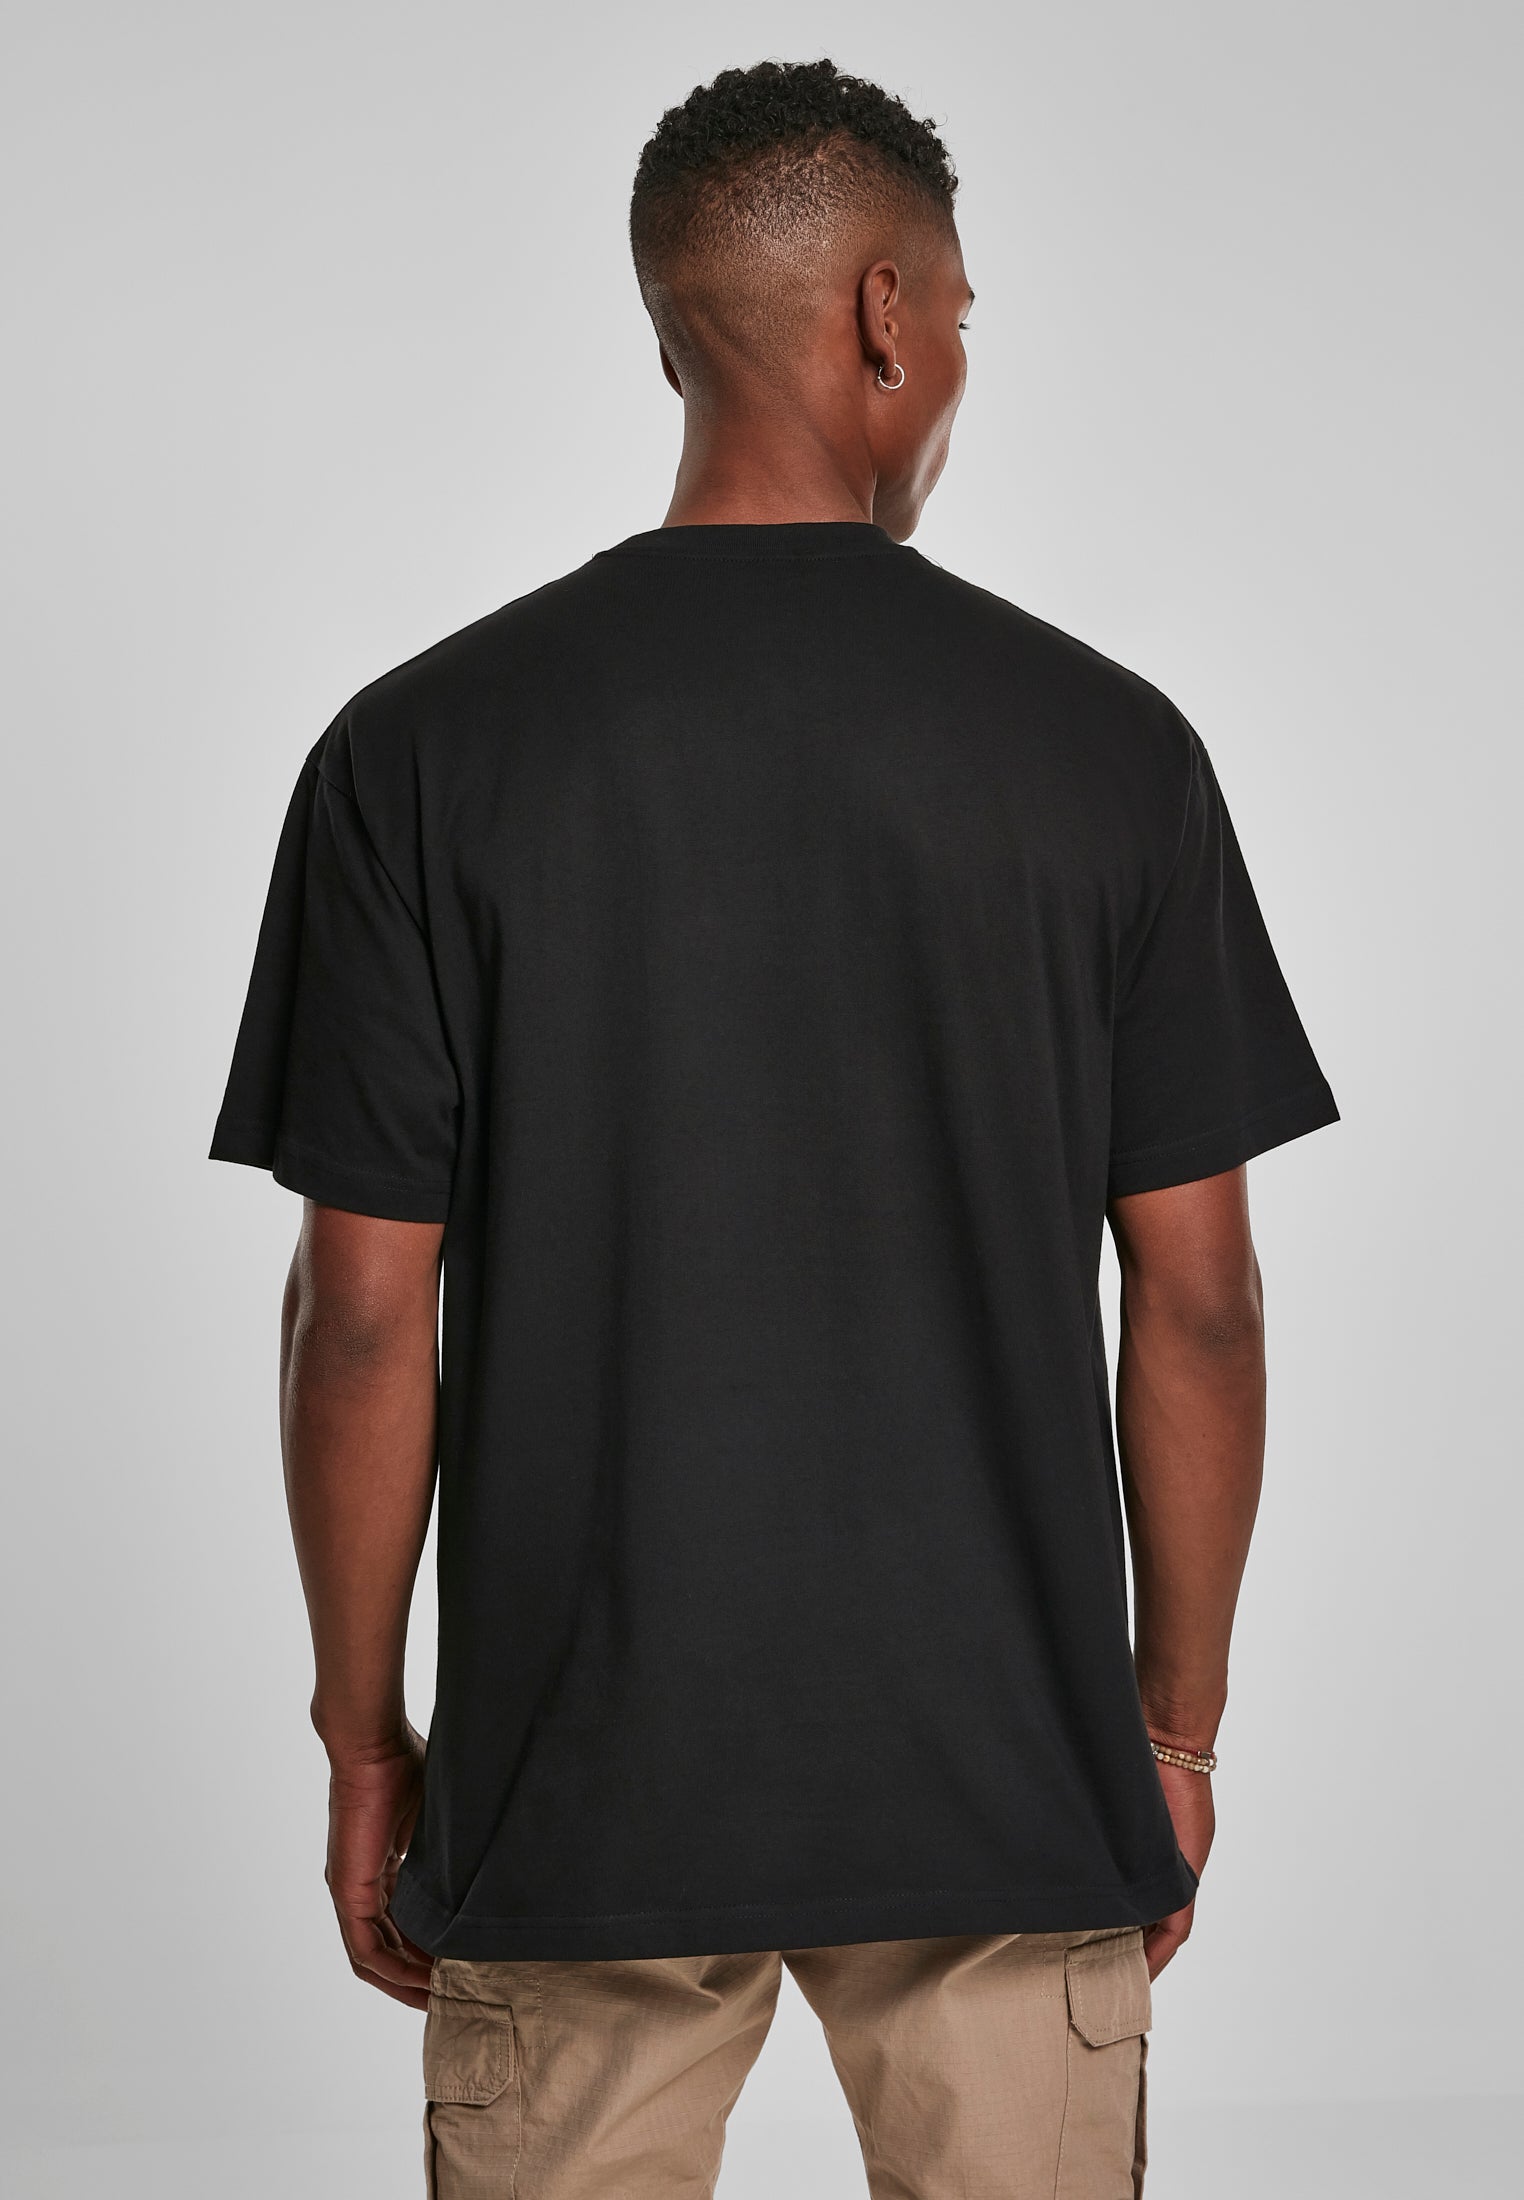 Churchville Black Oversized T-Shirt